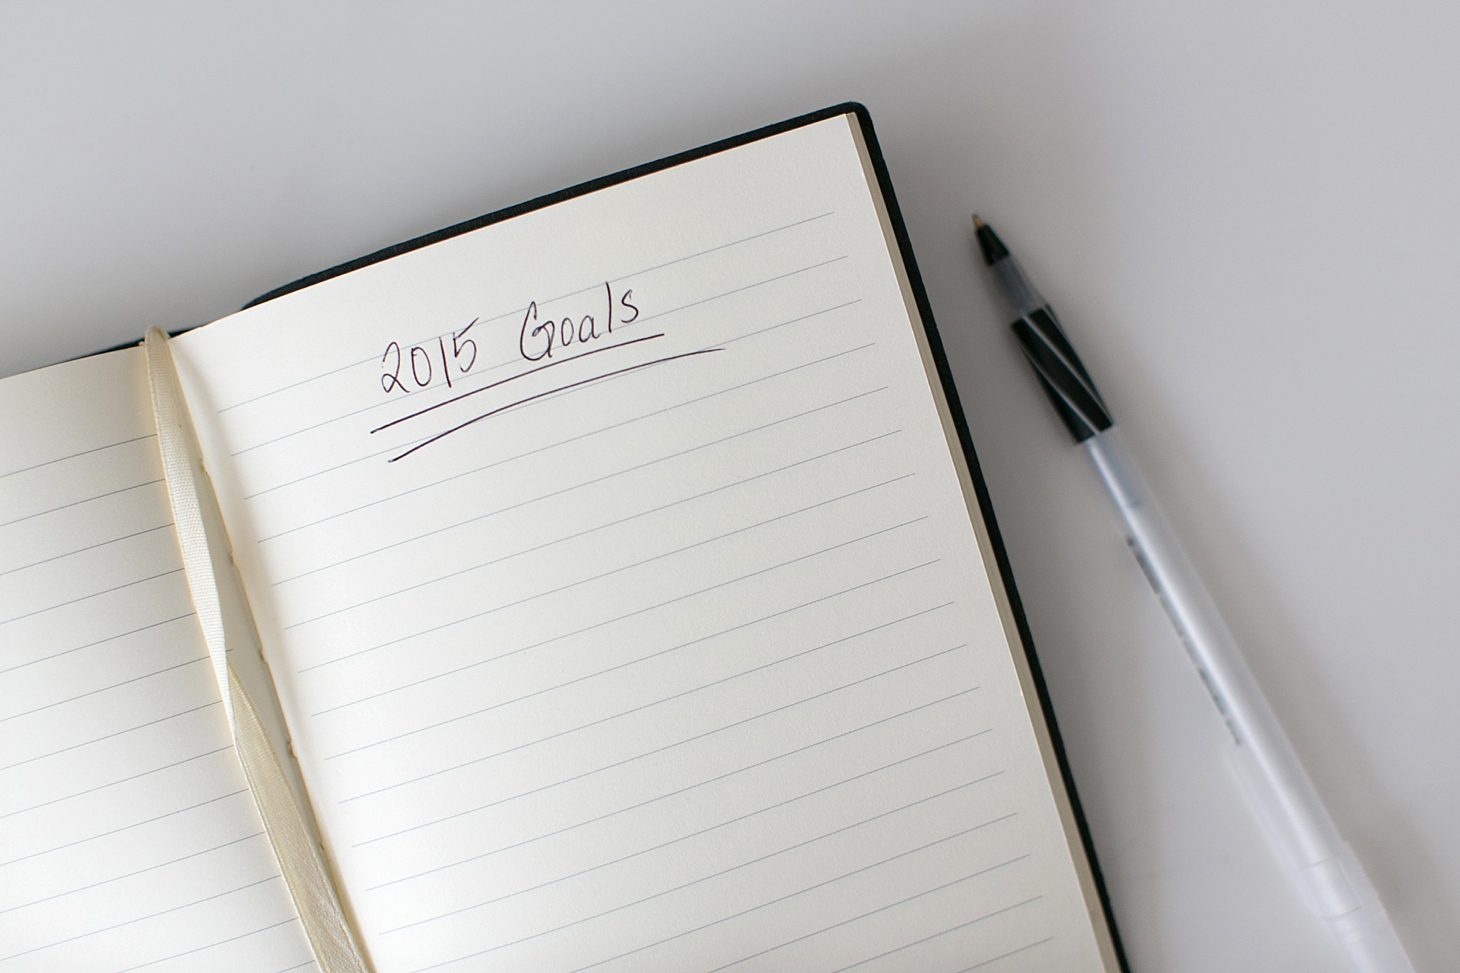 2015-goals-deadlines_0002